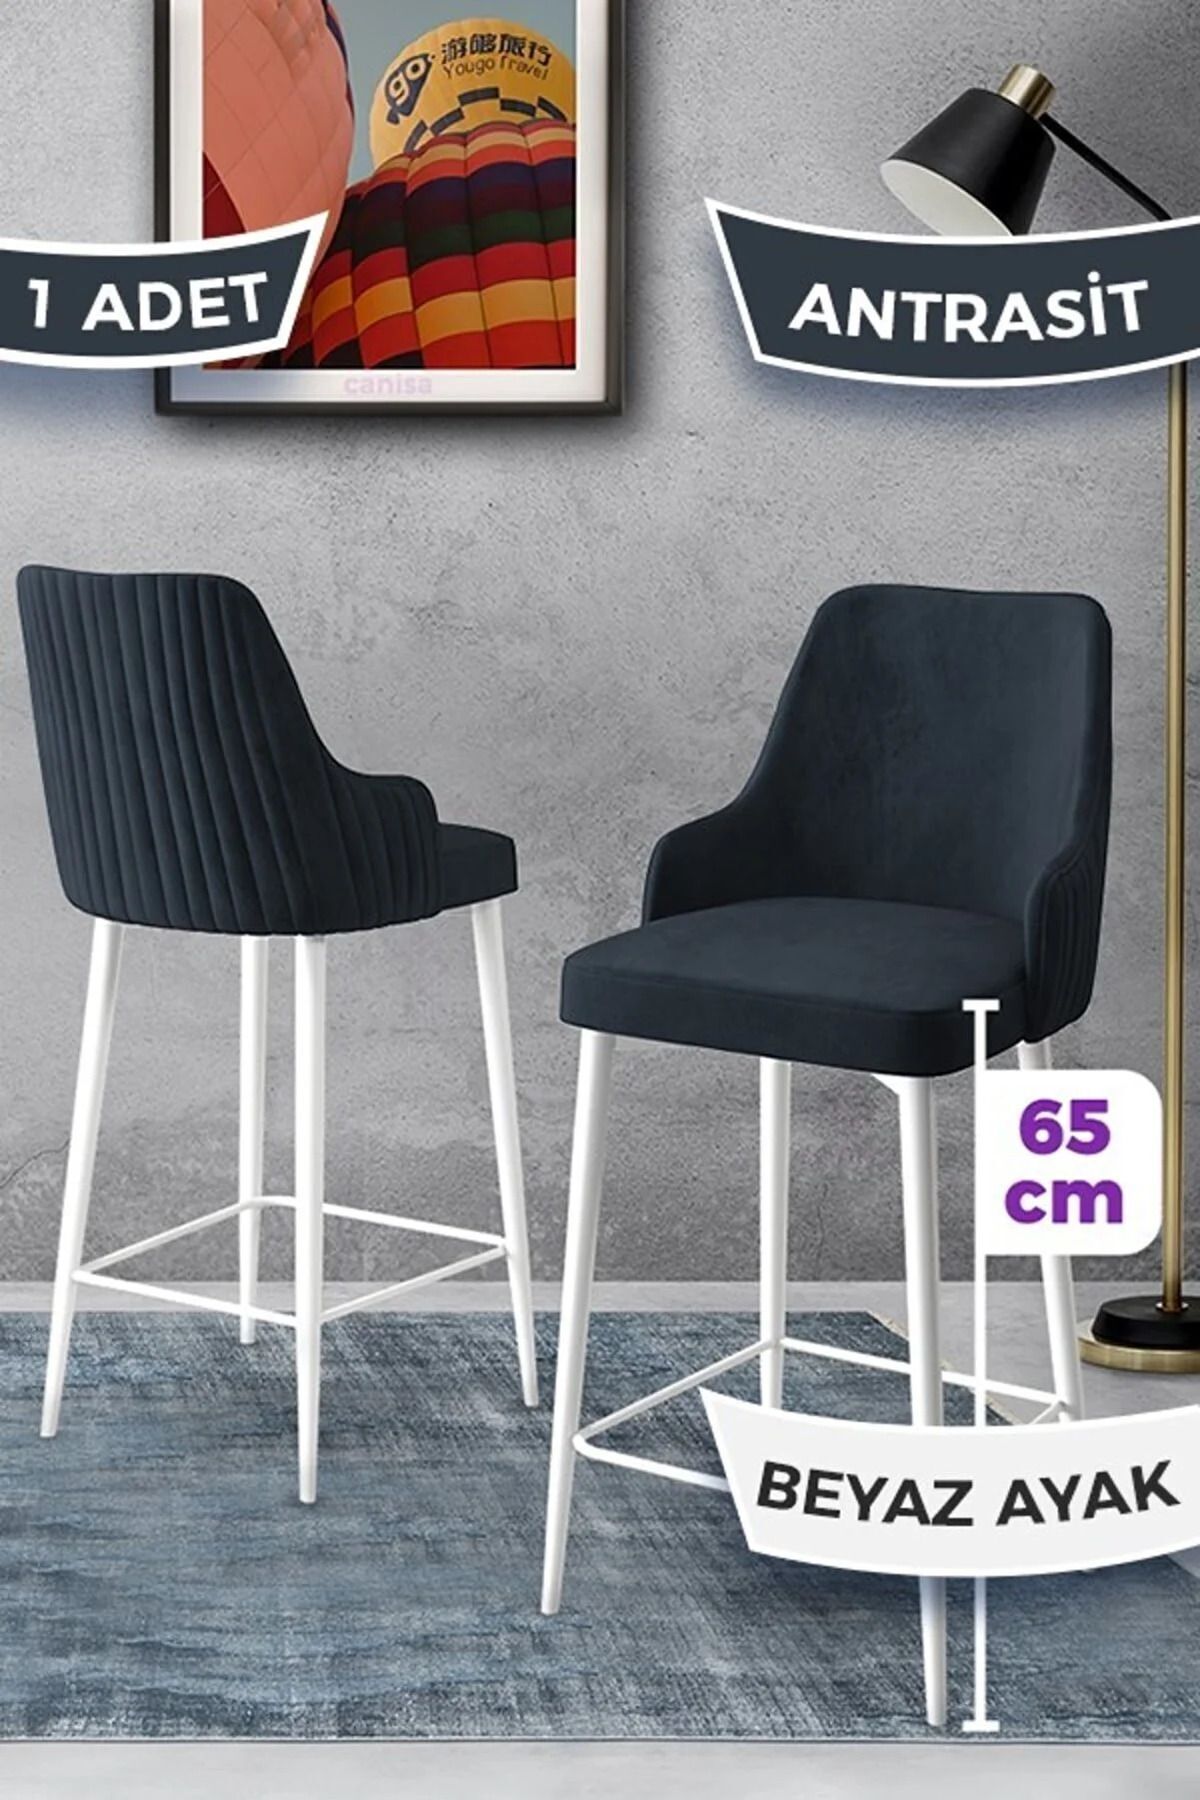 Canisa Tera Serisi 1 Adet 65 Cm Antrasit Ada Mutfak Bar Sandalyesi Babyface Kumaş Beyaz Metal Ayaklı